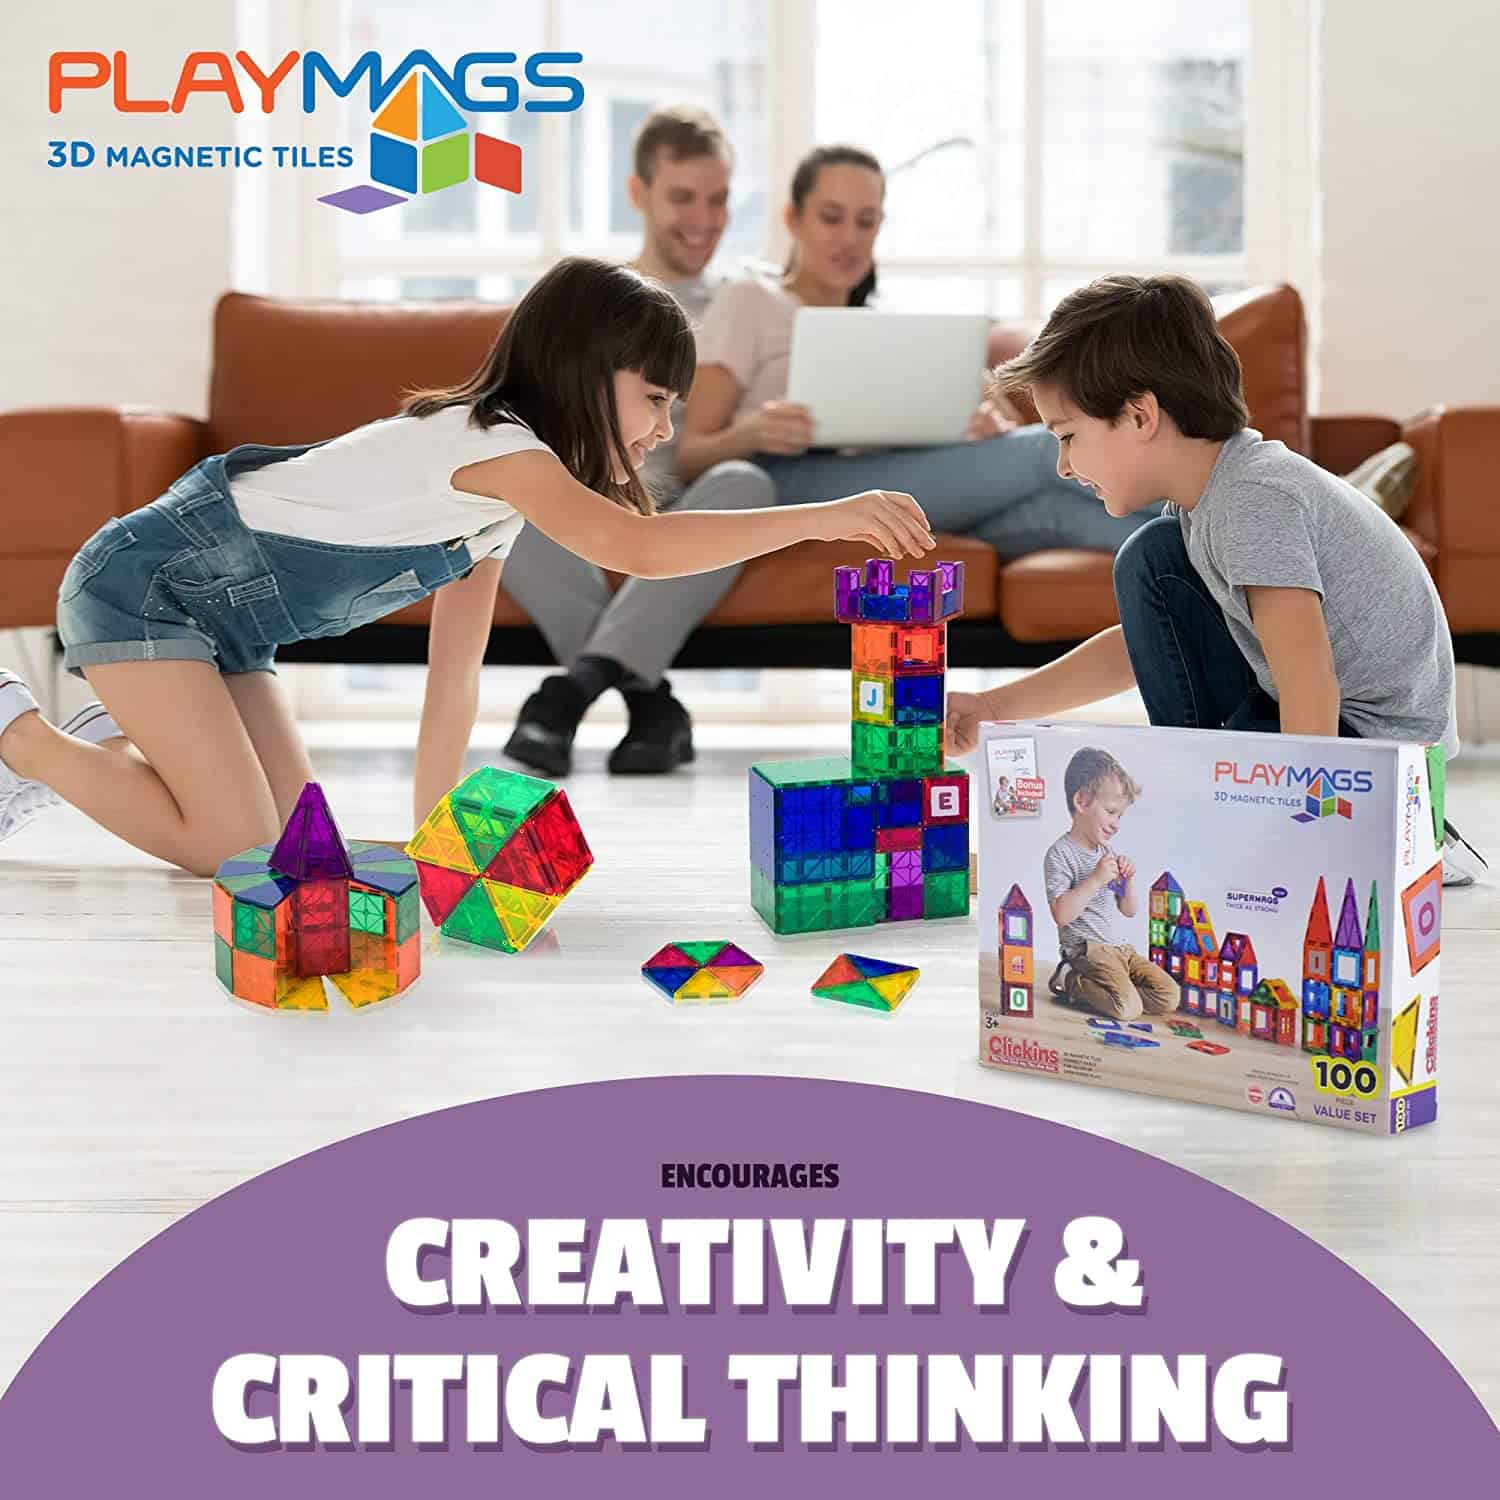 Beste tegels bouwset met magneten vanaf 5 jaar: Playmags 150 delig Clear Colors Magnetic Tiles